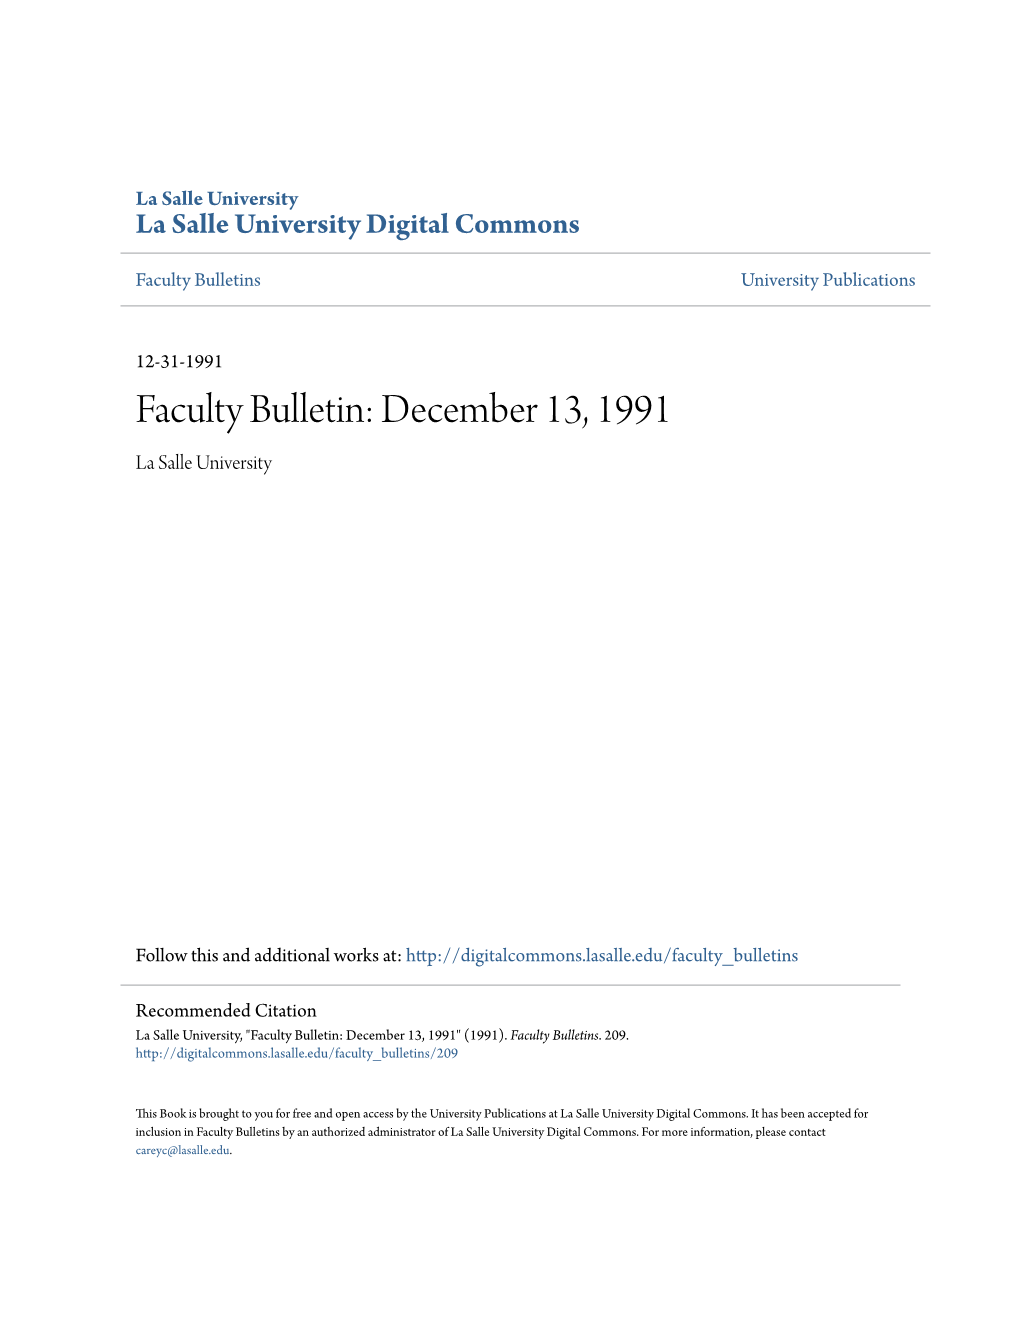 Faculty Bulletin: December 13, 1991 La Salle University